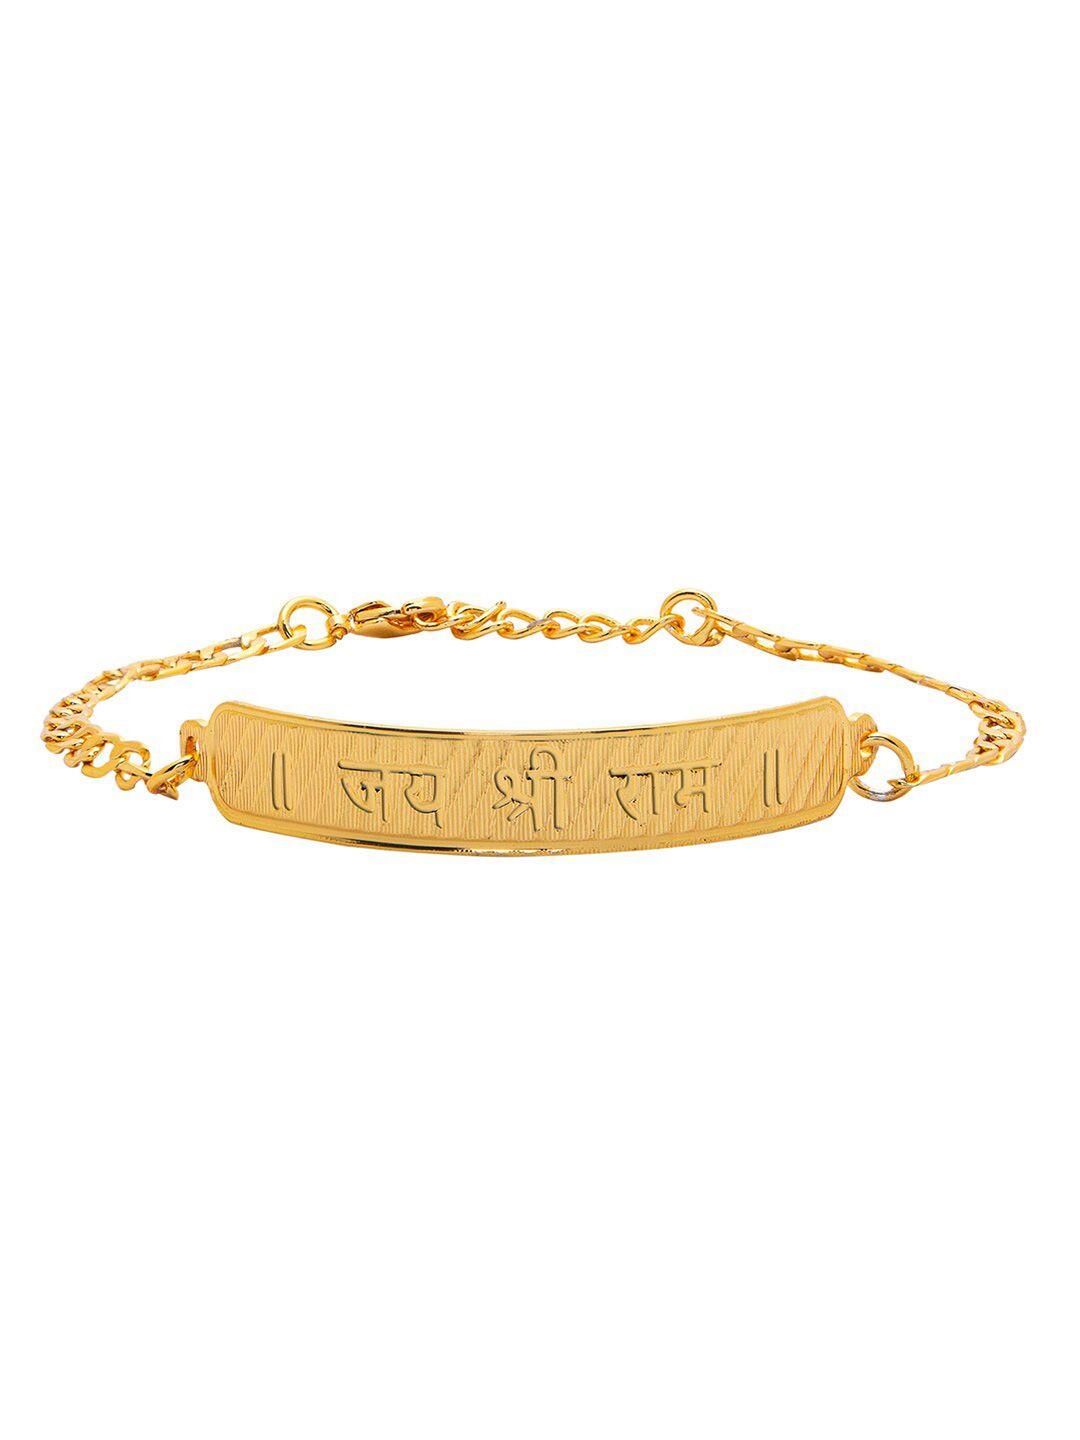 bodha men gold-plated link bracelet